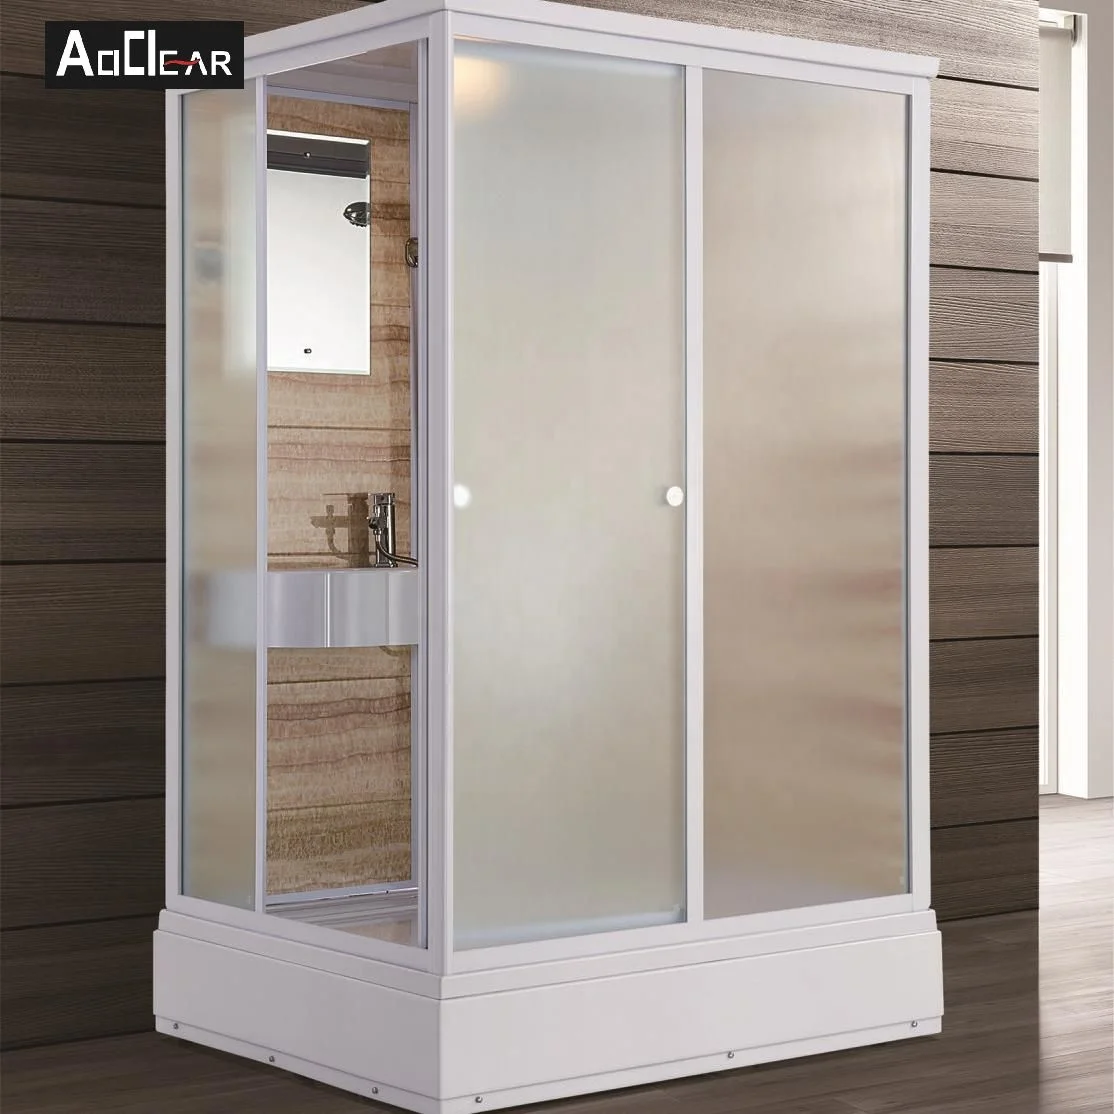 Aokeliya portable all in one shower toilet unit prefab room with pod modular bathroom